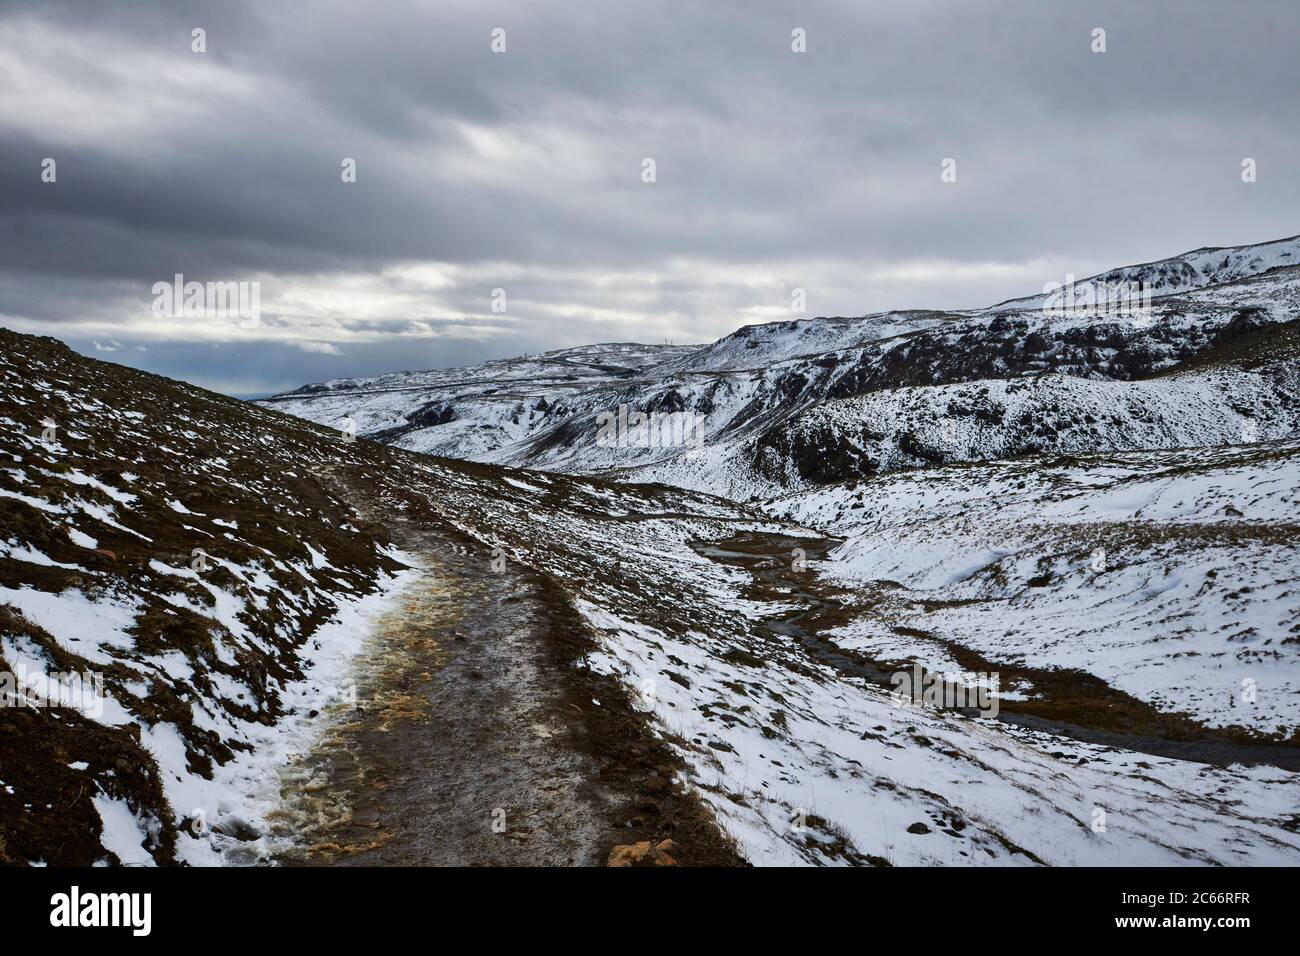 Islandia, el valle de Reykjadalur, Hveragerdi, montañas nevadas y fuentes geotérmicas Foto de stock